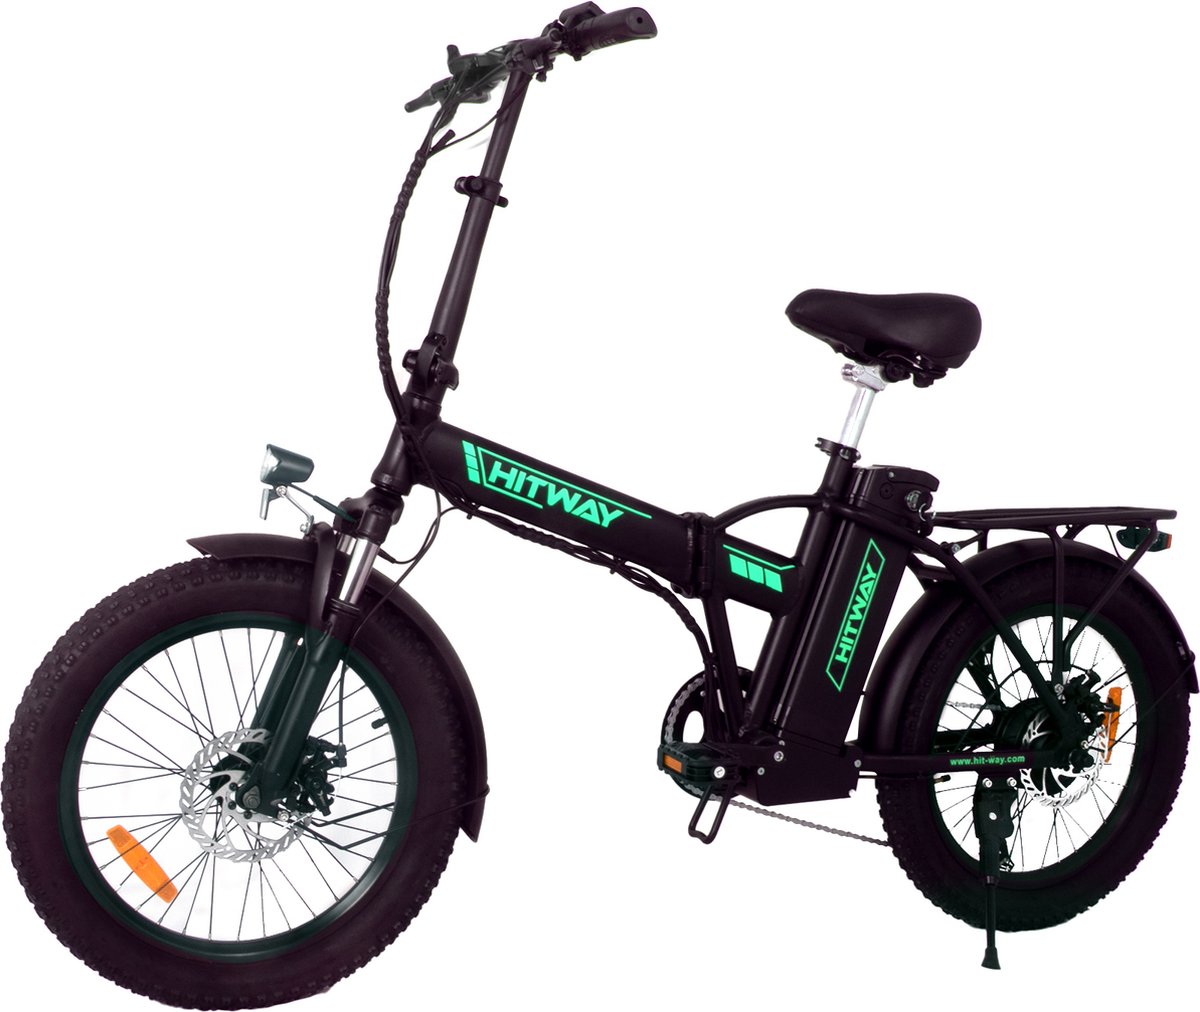 P4B - Fatbike - Elektrische Fatbike - Elektrische Fiets - Elektrische Vouwfiets - E-bike - 1 jaar garantie